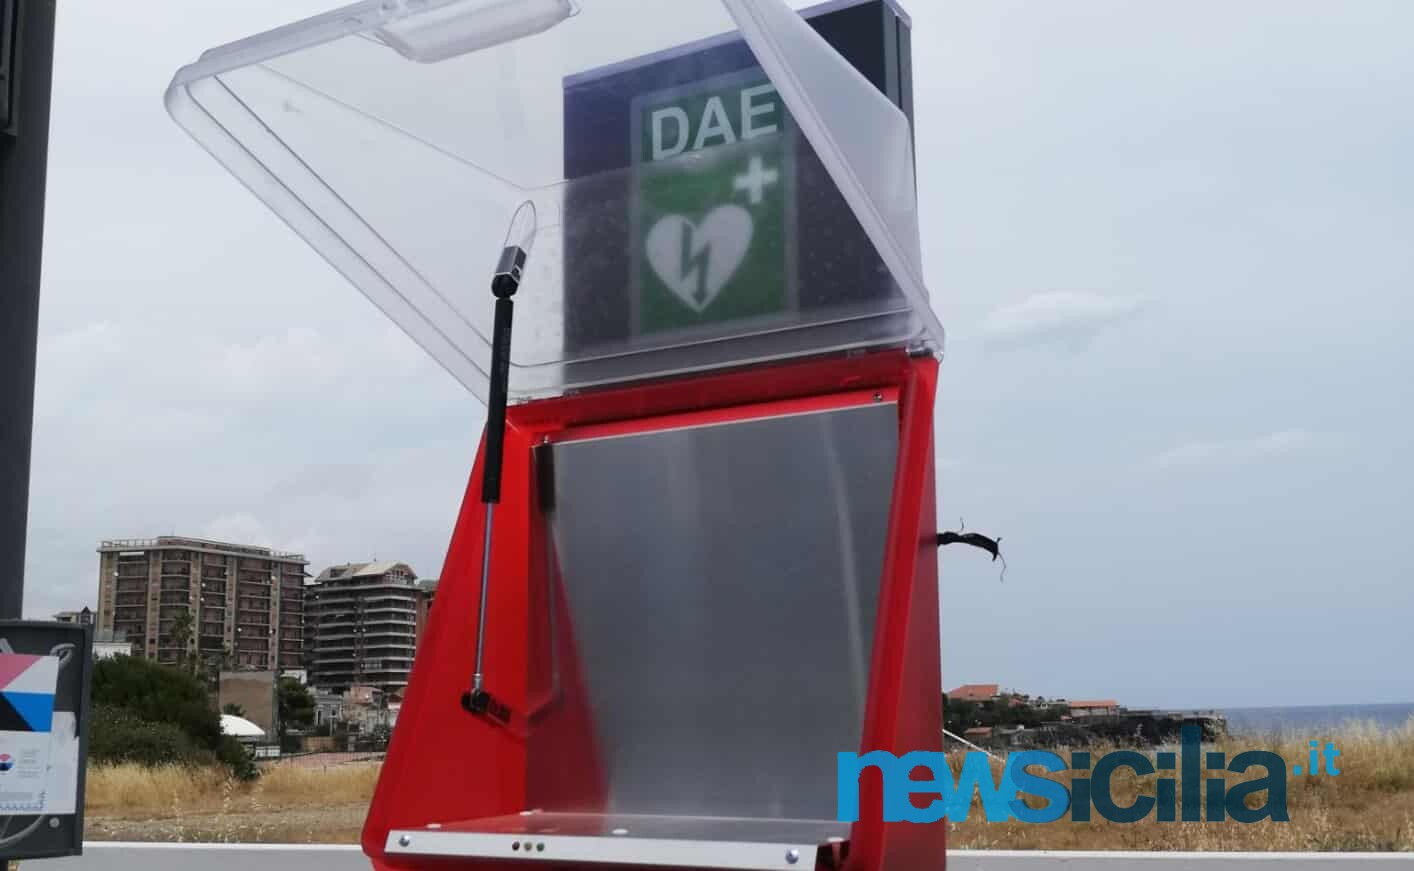 Catania, rubato defibrillatore al lungomare? L’assessore Parisi chiarisce: “Deve essere ancora installato”